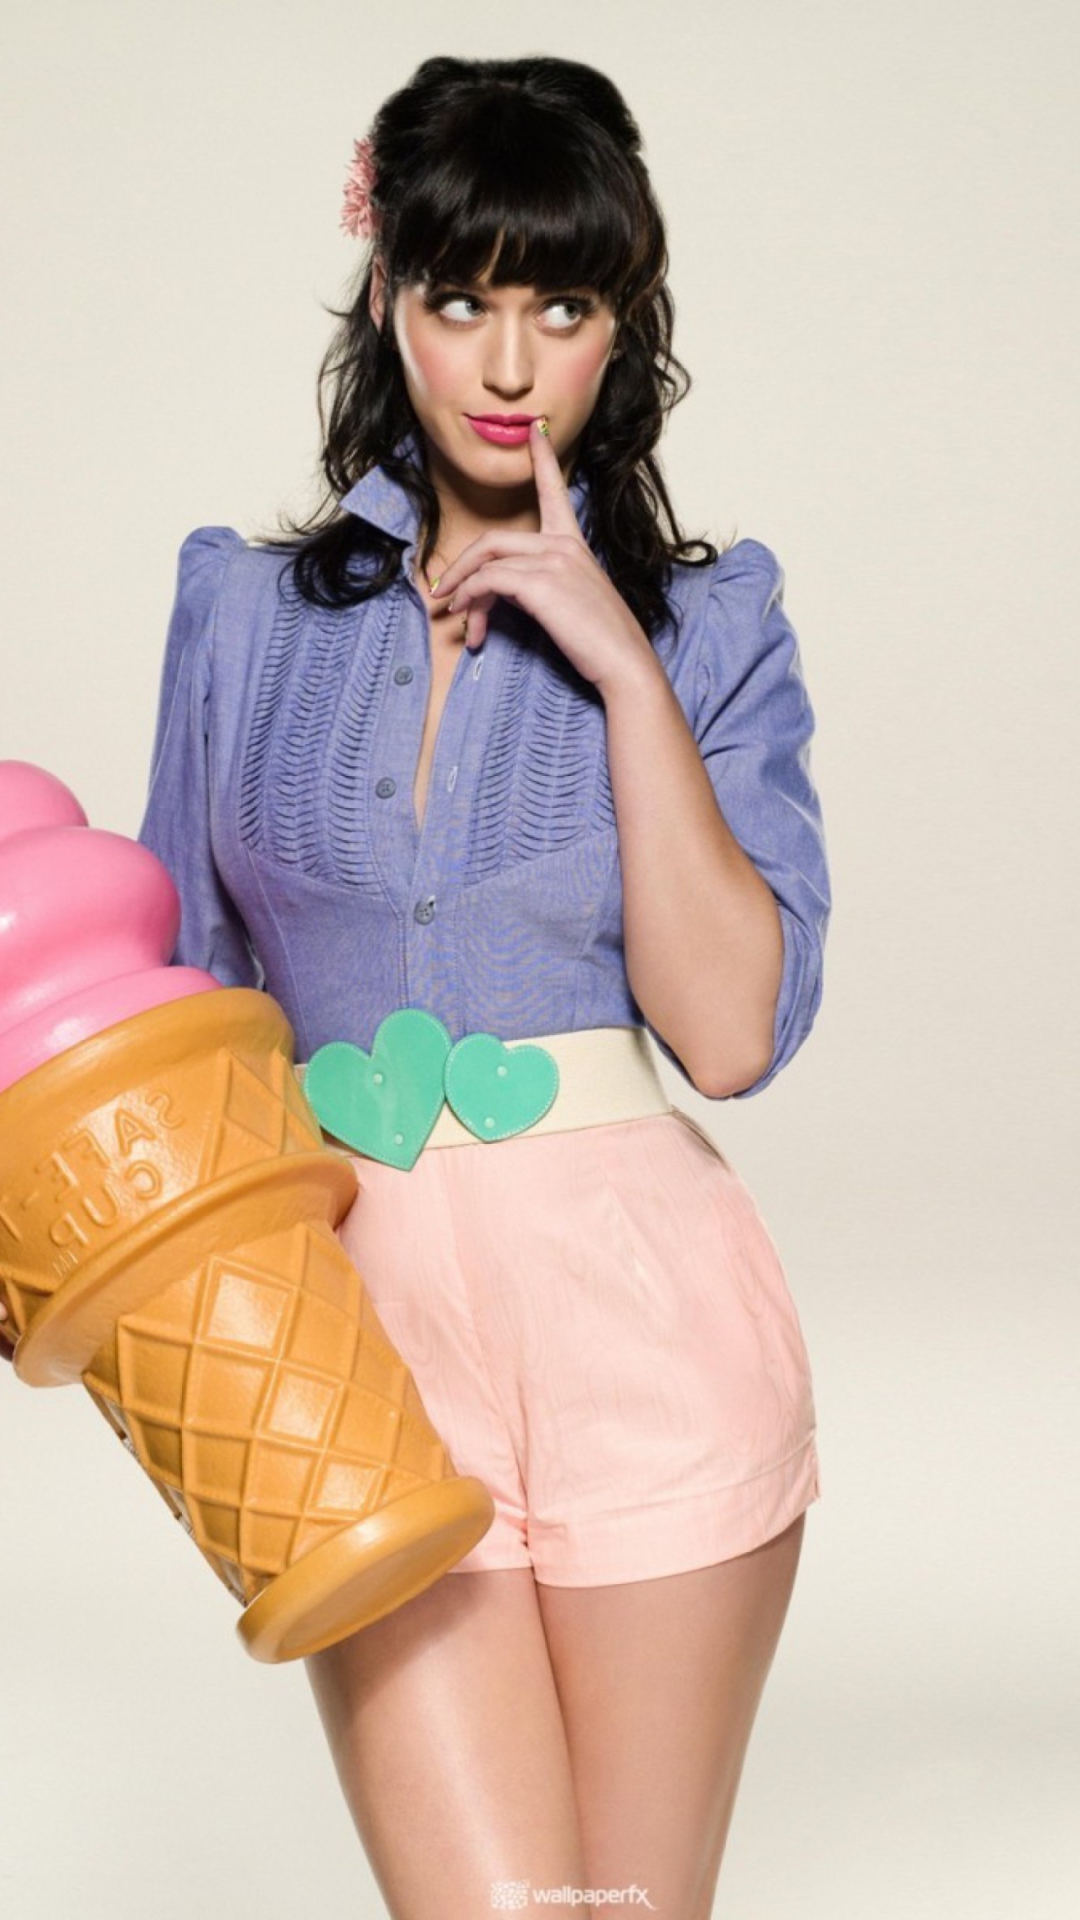 Katy Perry Ice-Cream wallpaper 1080x1920